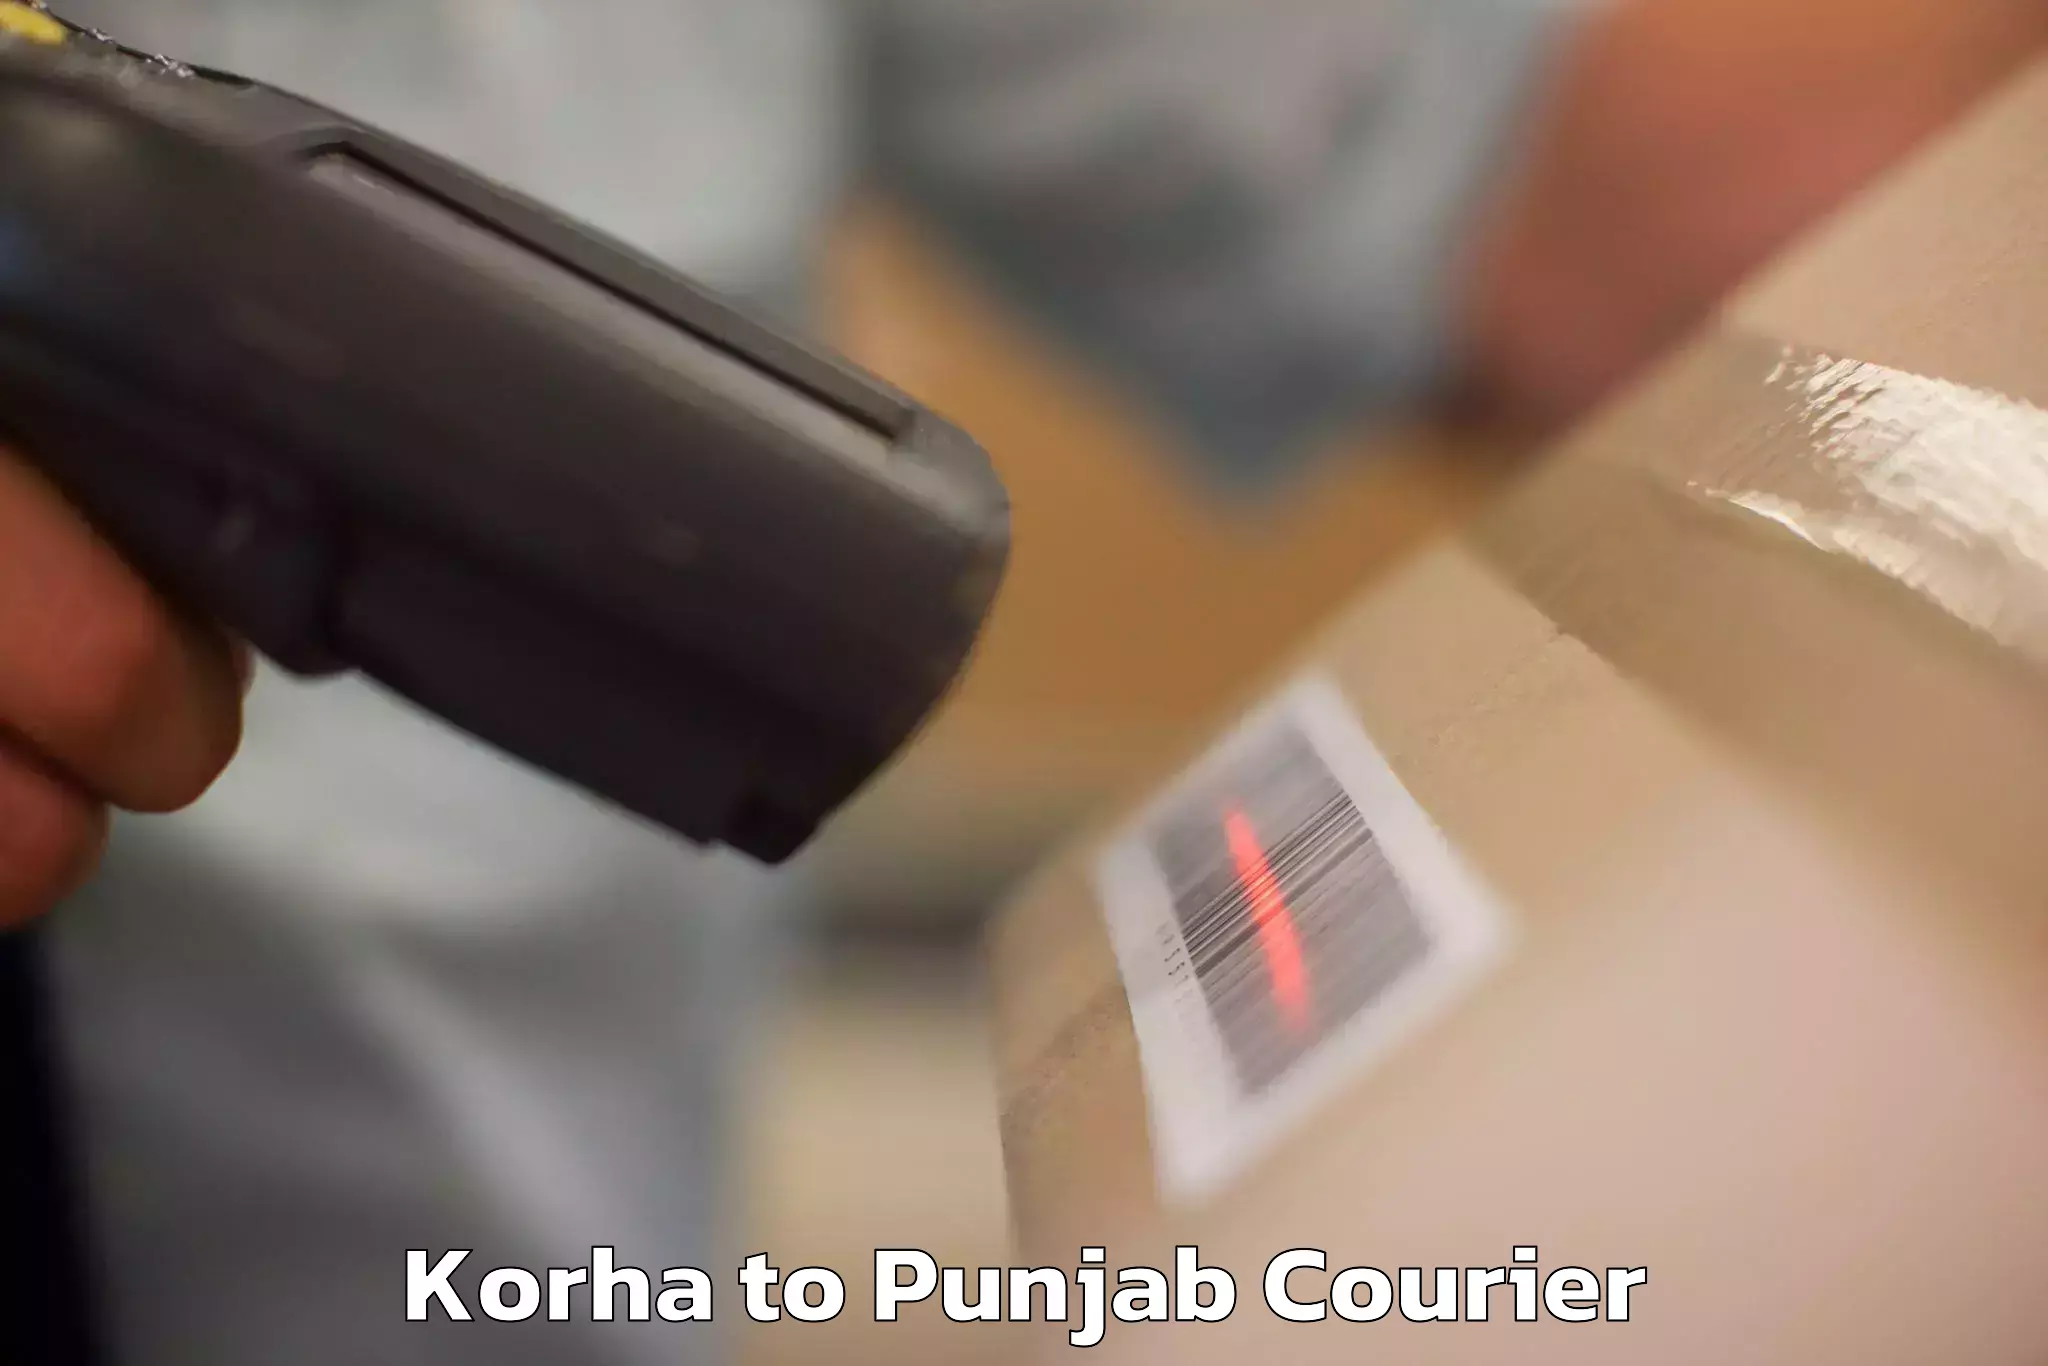 High-quality baggage shipment Korha to Mandi Gobindgarh